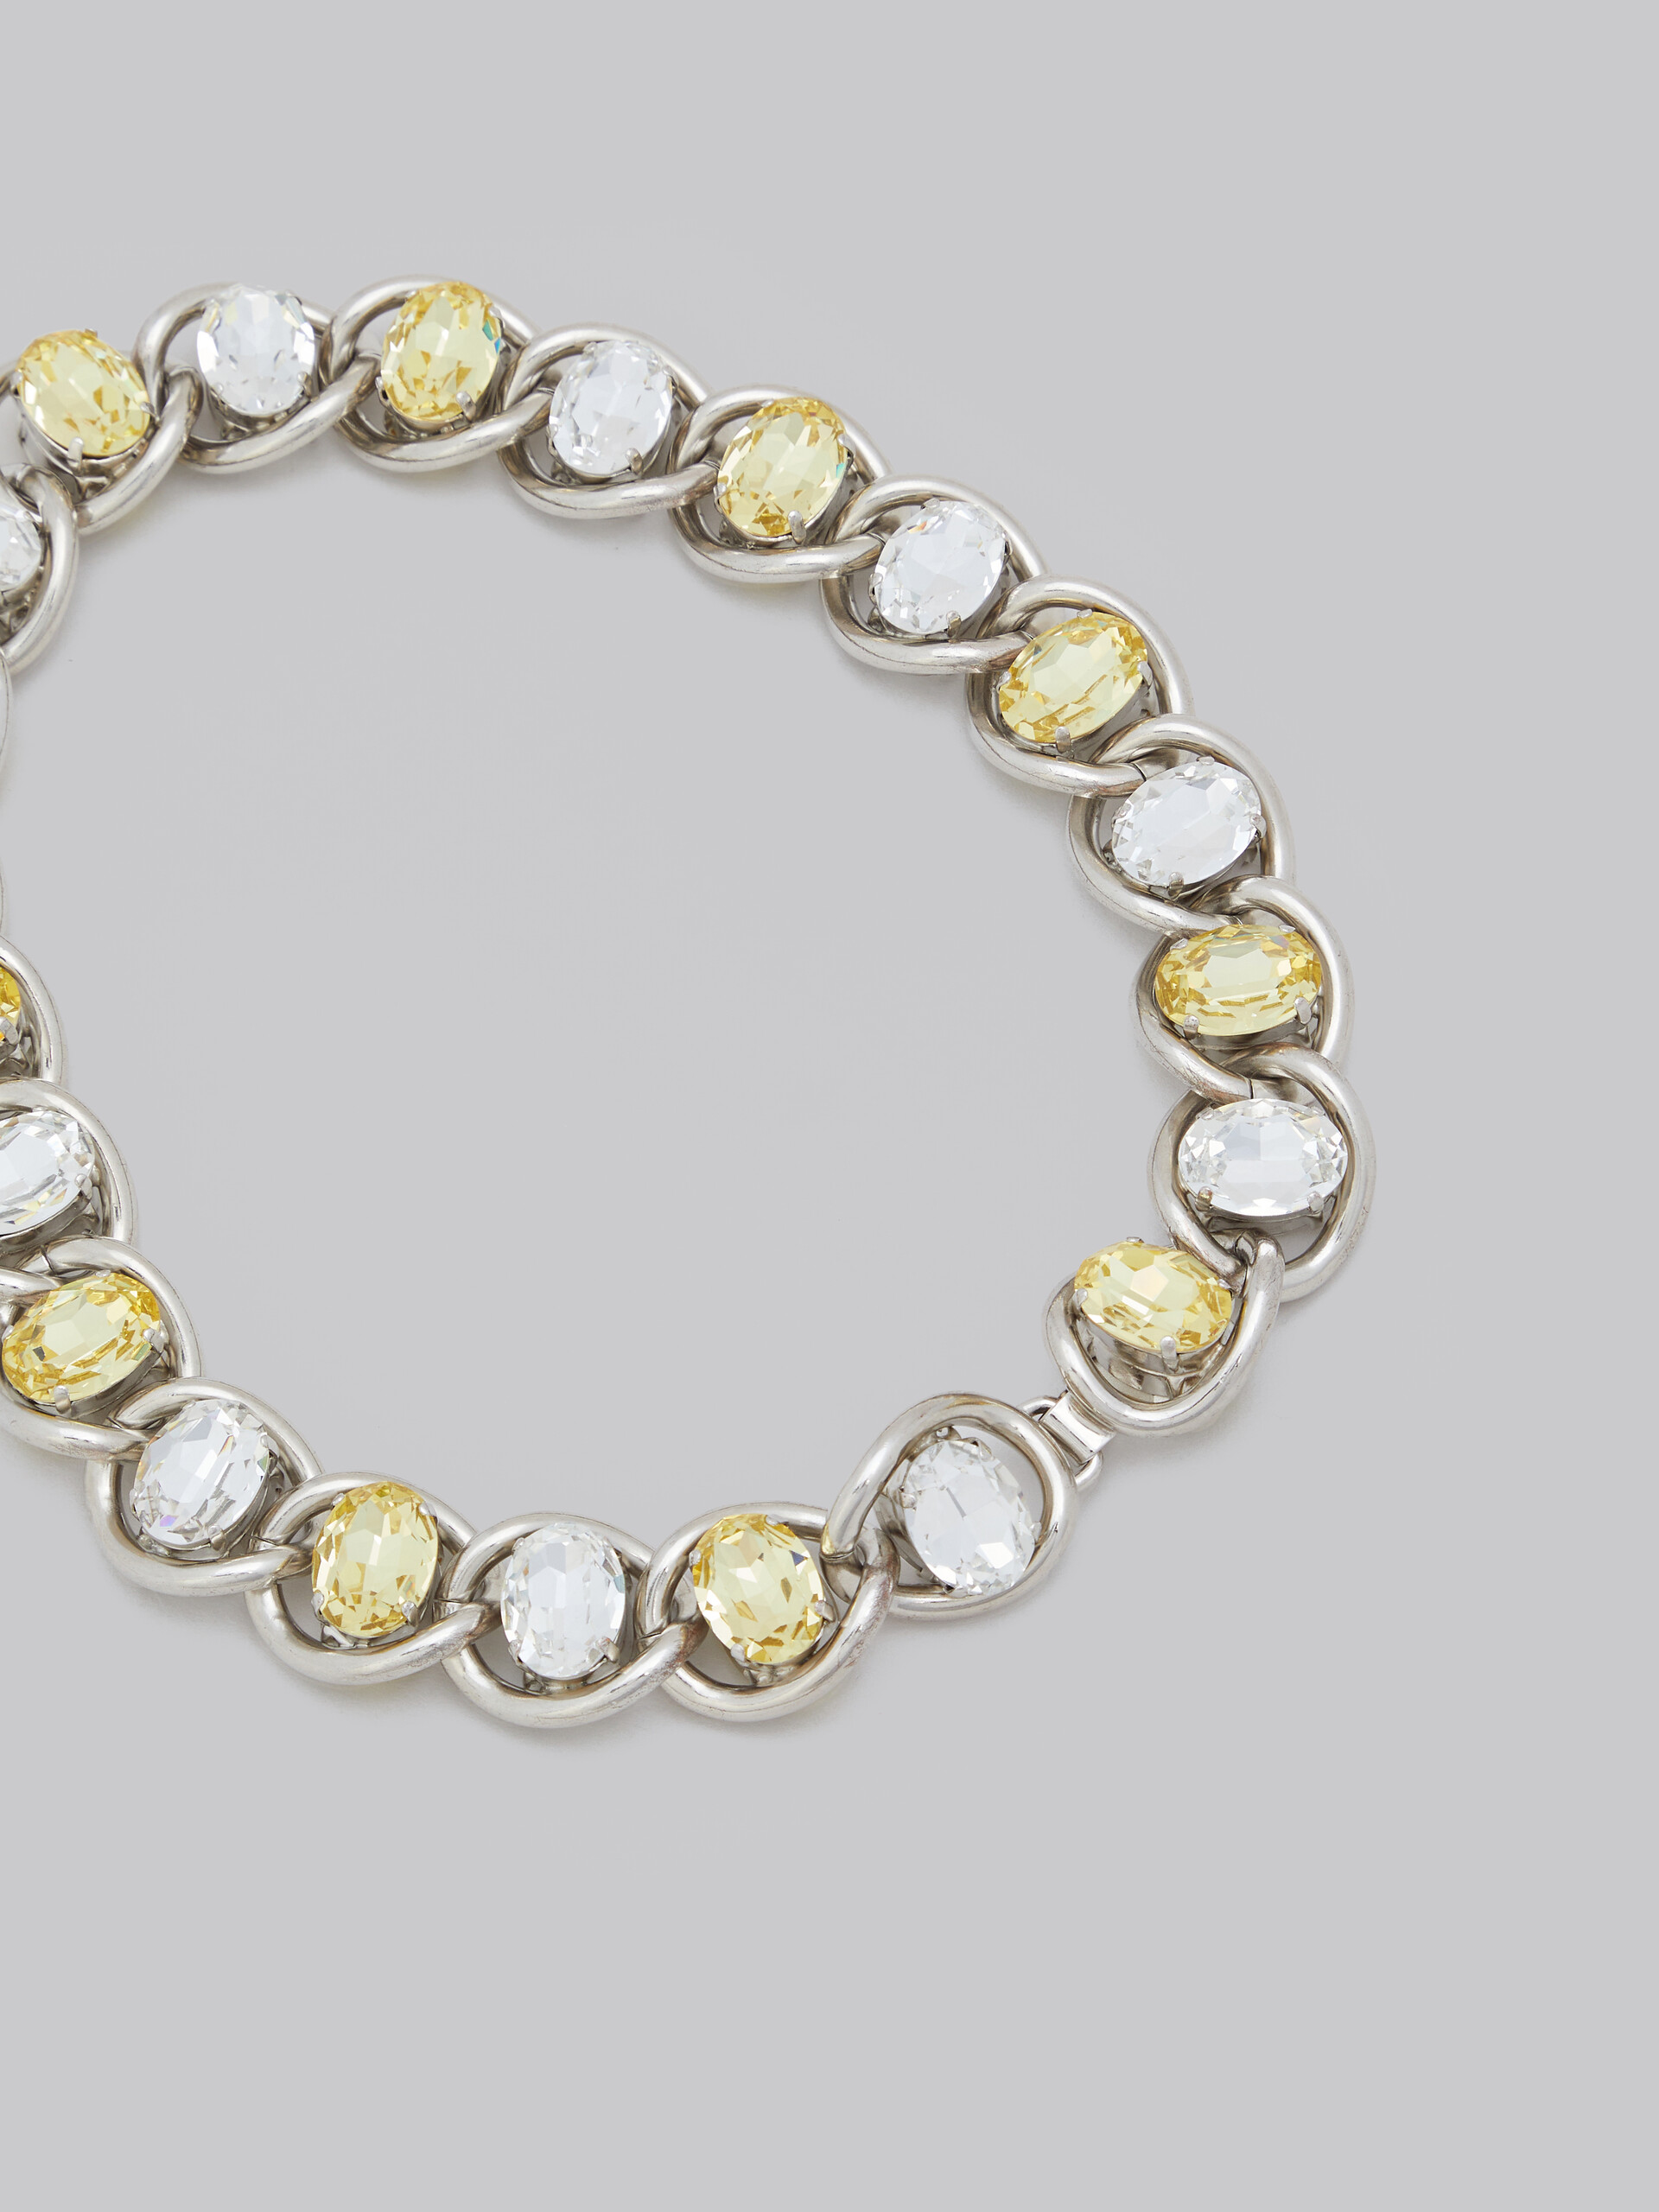 Collier en chaîne épaisse avec strass transparents et jaunes - Colliers - Image 4